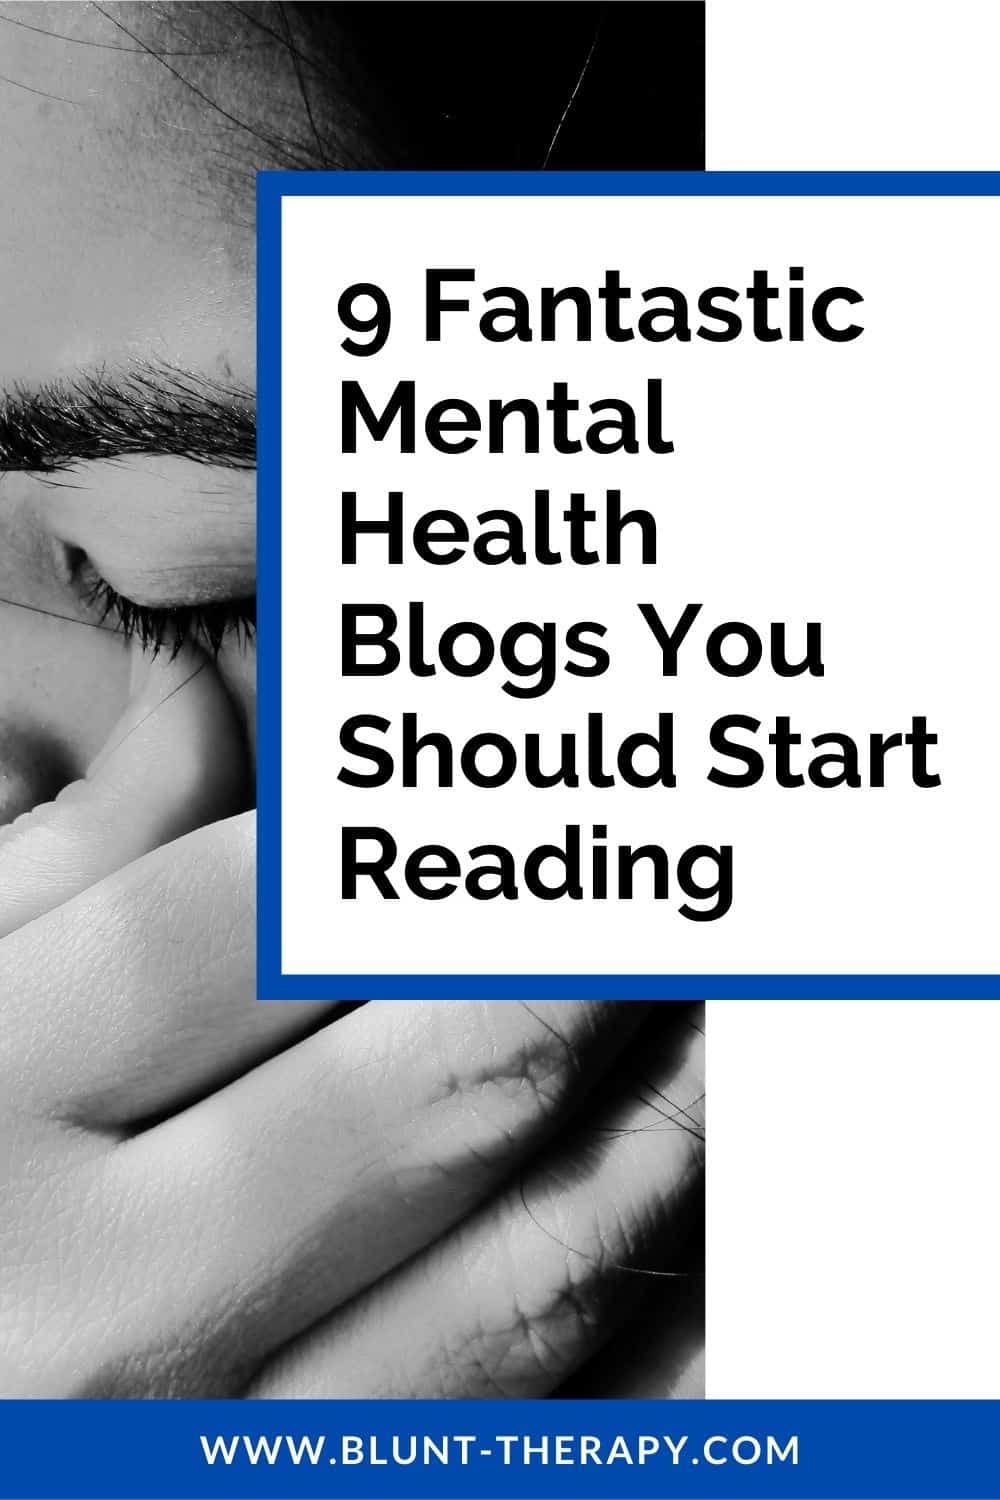 9 Fantastic Mental Health Blogs You Should Start Reading